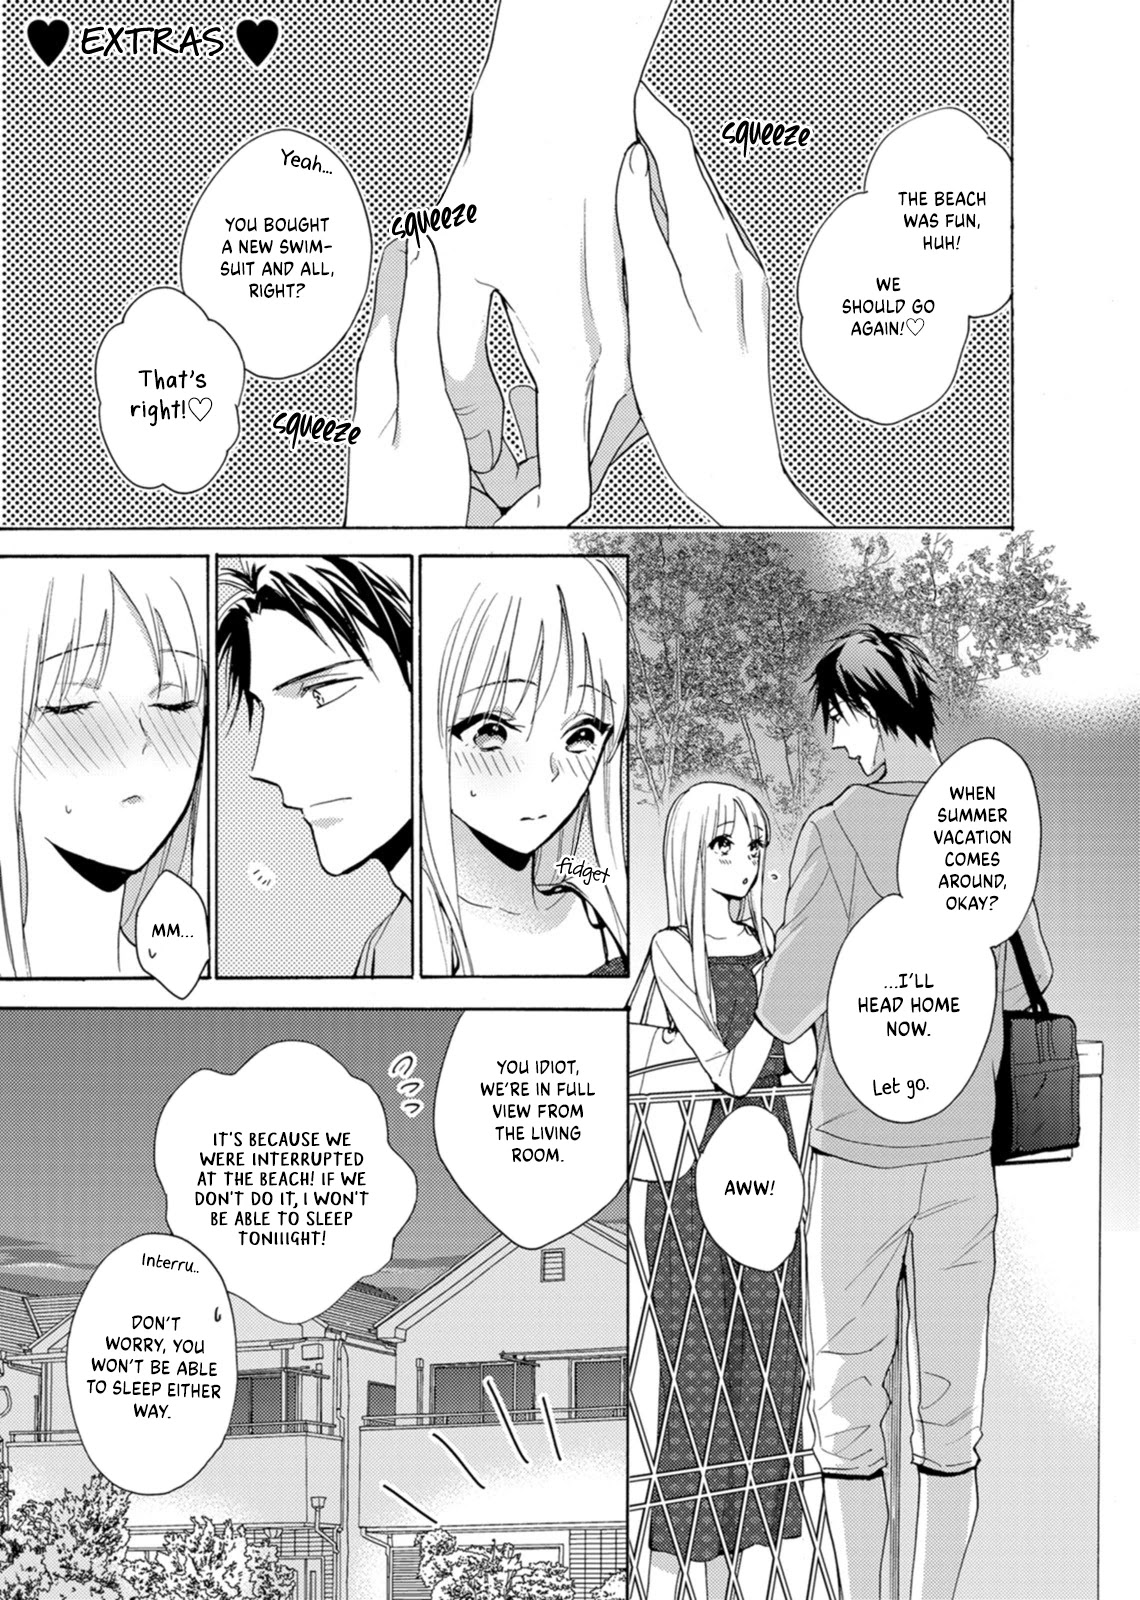 Karen Ichijou Tempts Him - Page 2